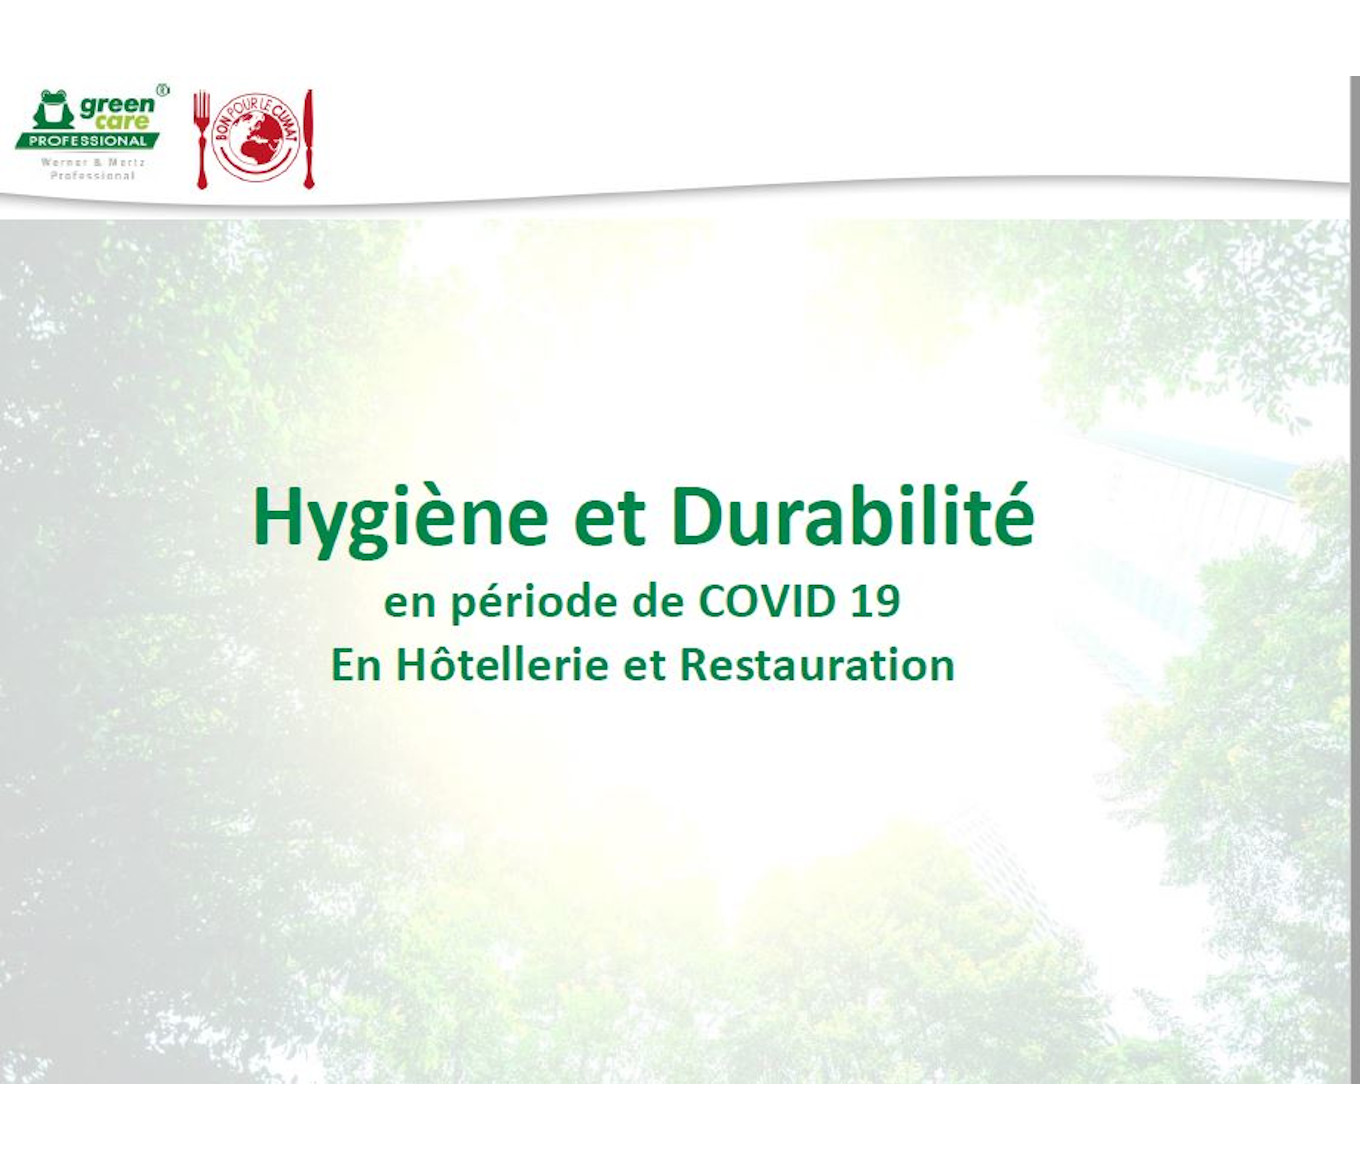 You are currently viewing Webinar hygiène et durabilité en période Covid